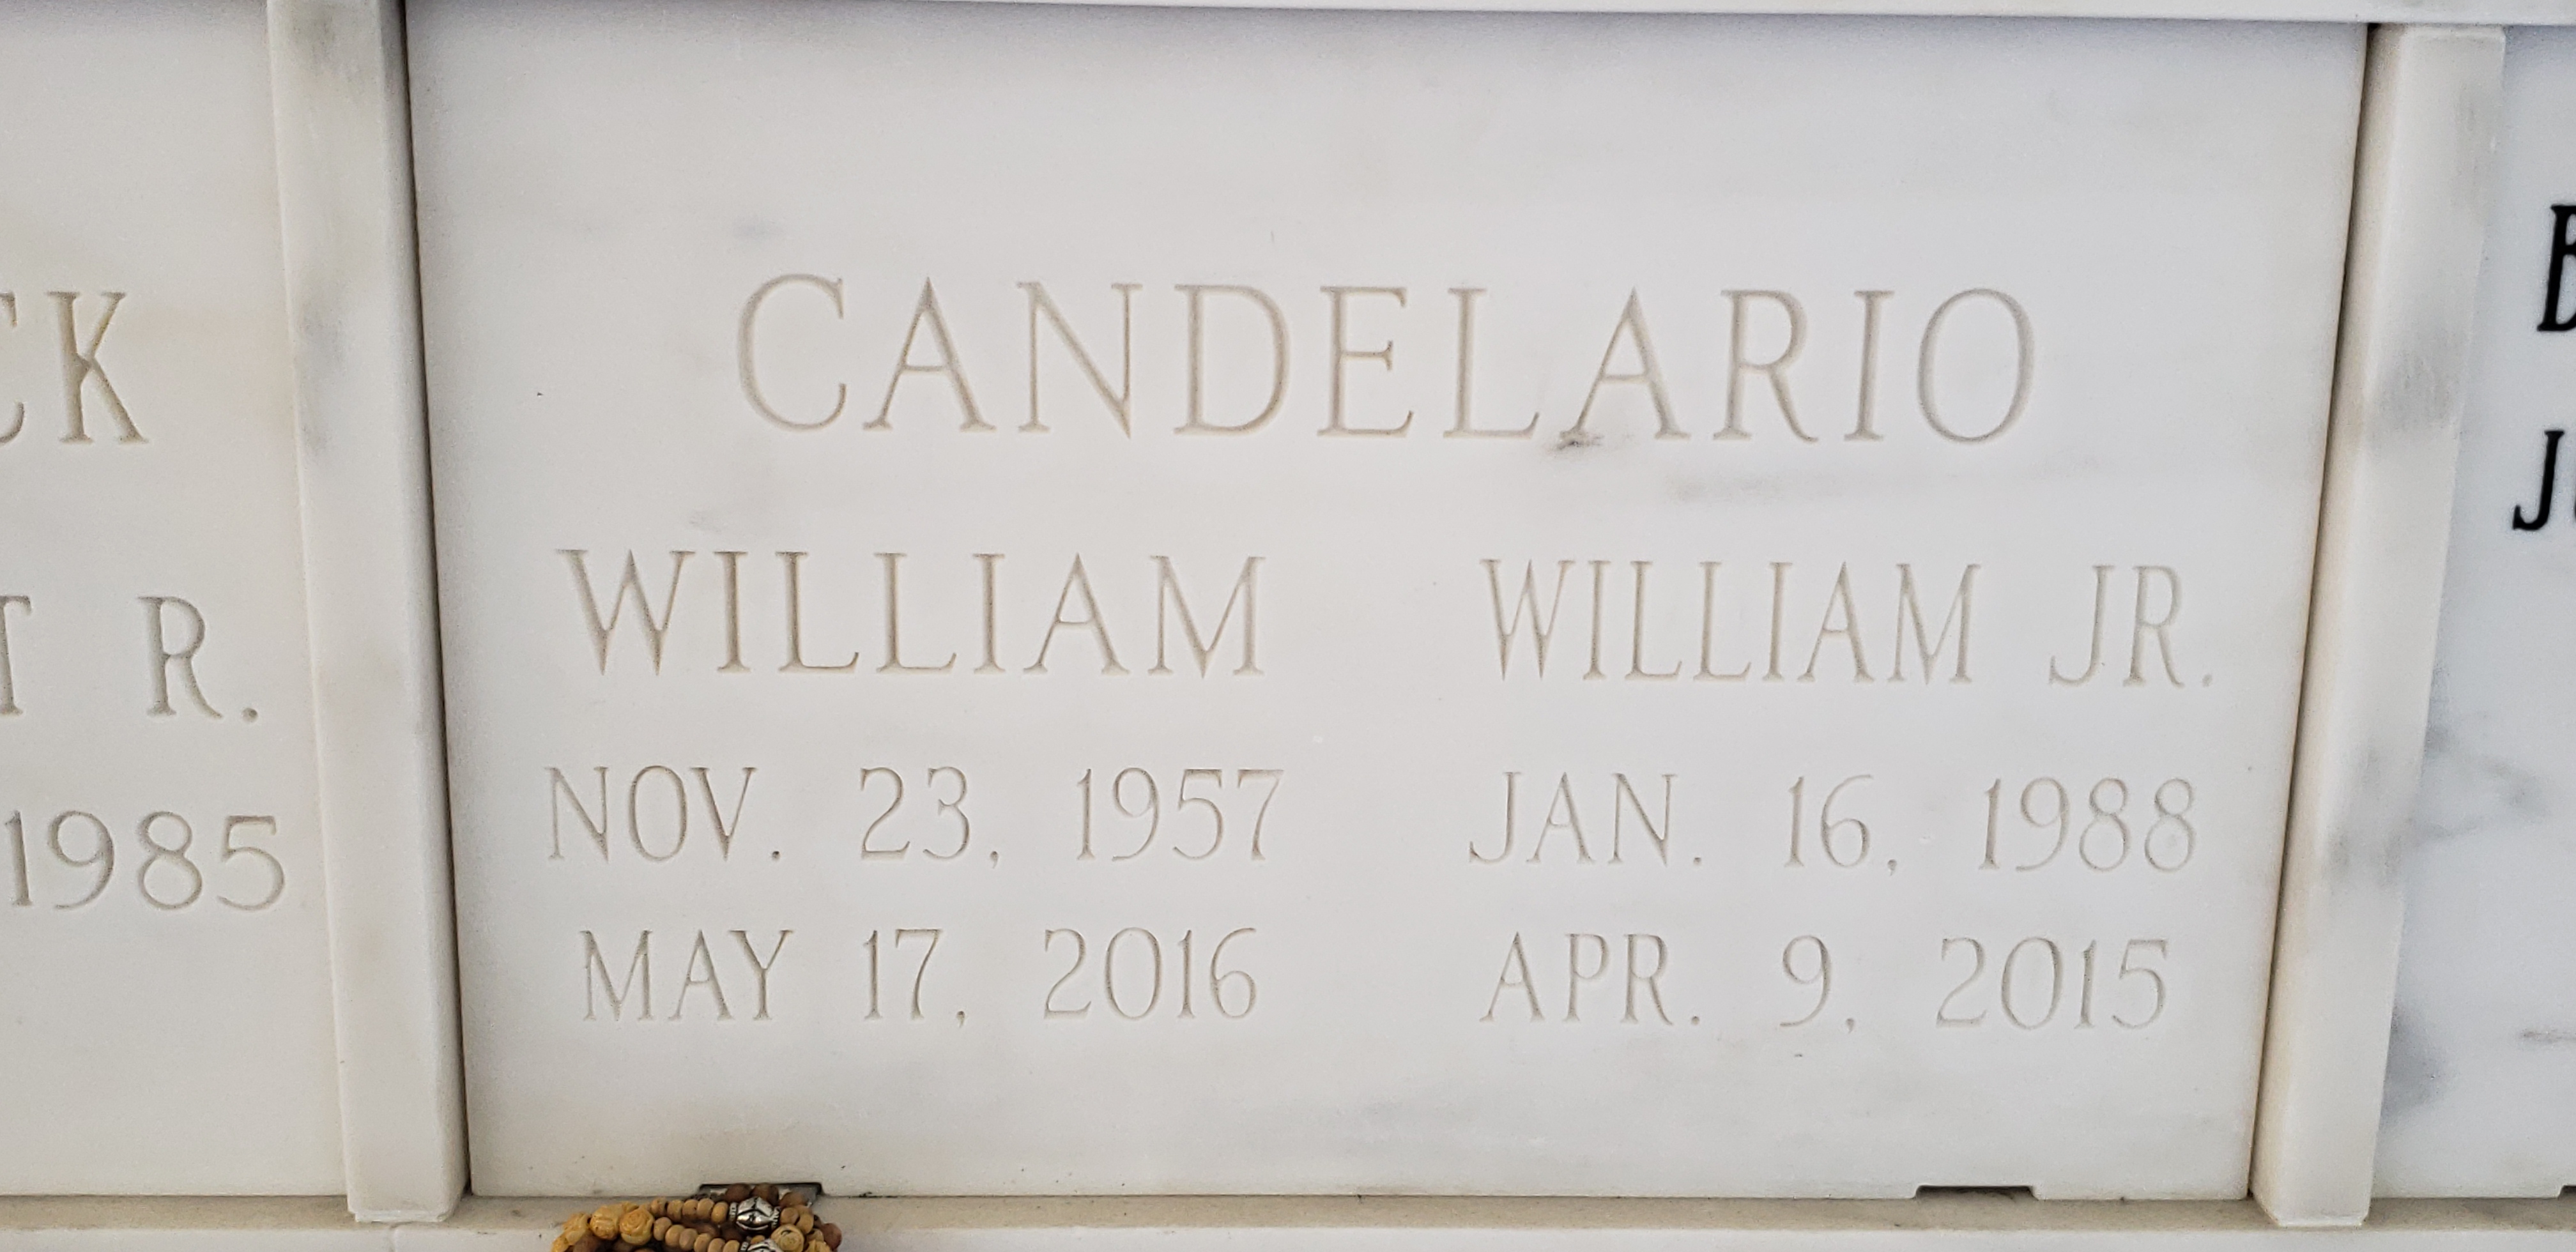 William Candelario, Jr